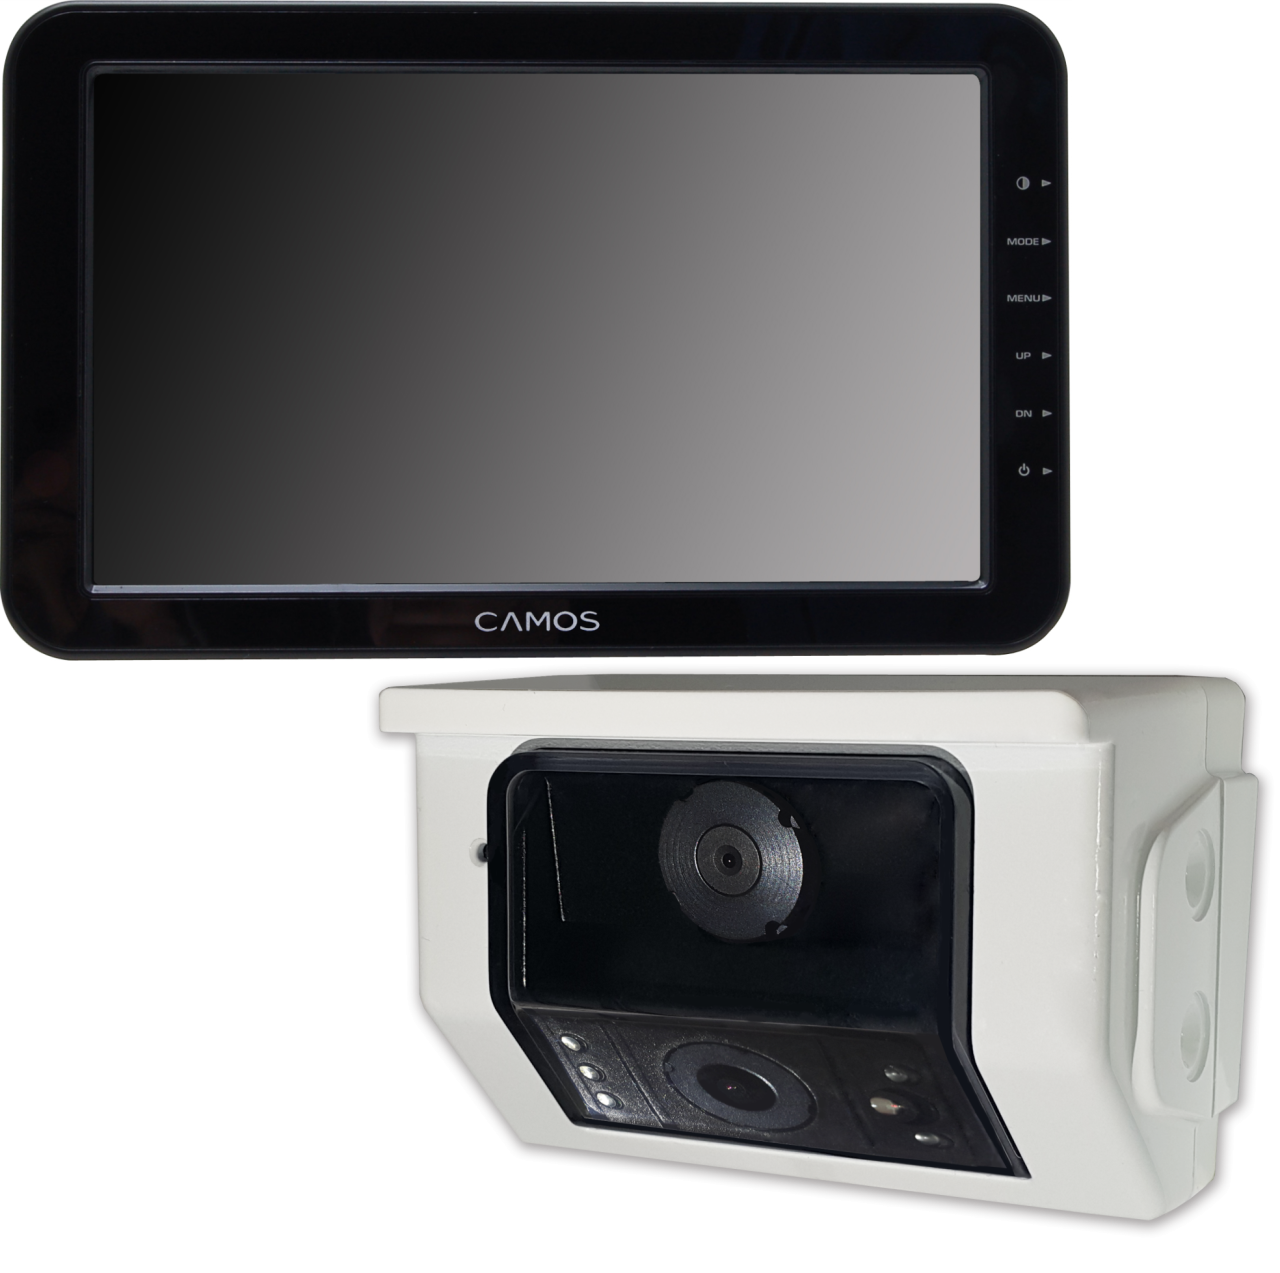 CAMOS TV-720 mit Doppelobjektivkamera von CAMOS